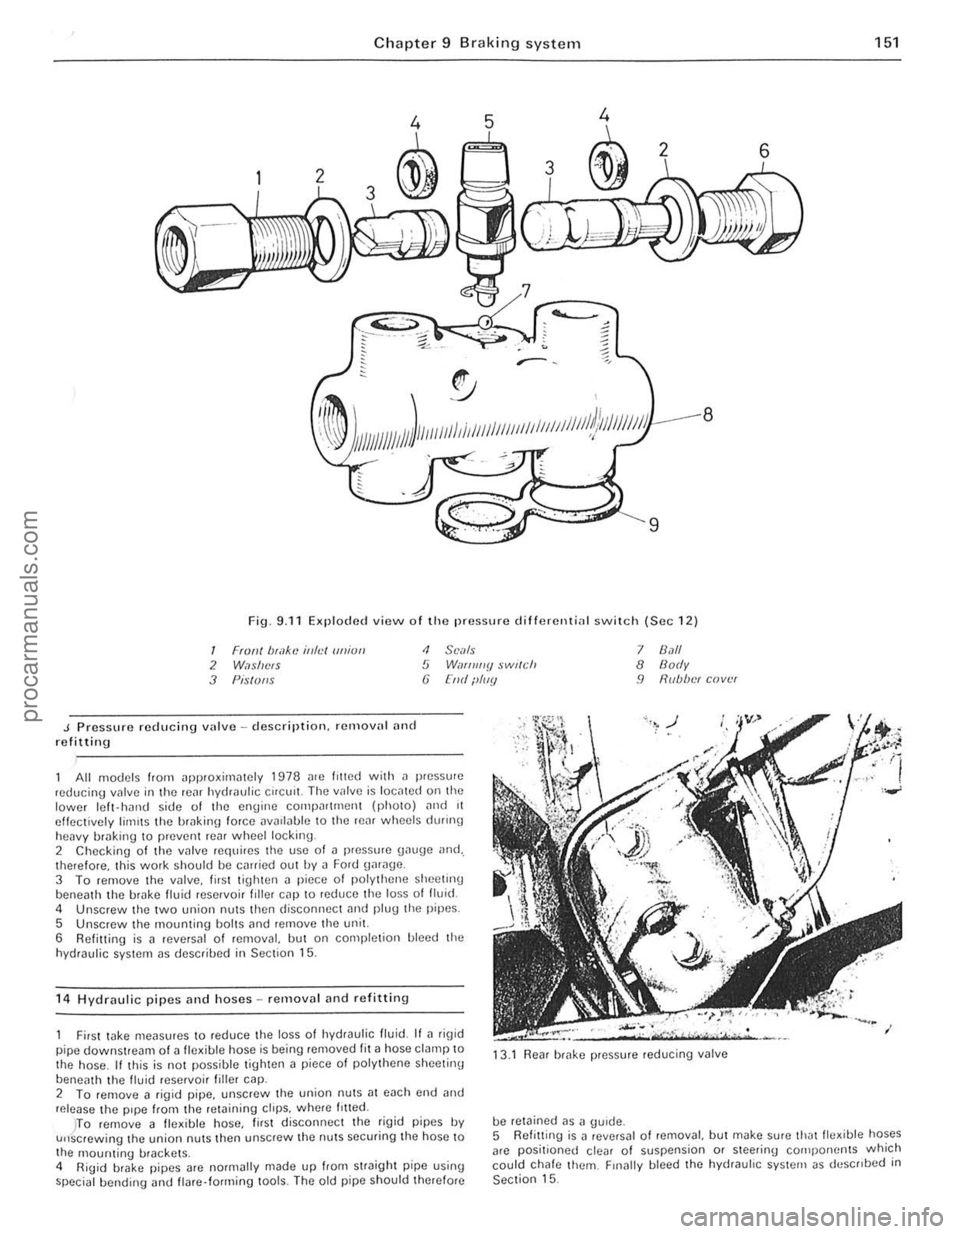 FORD CAPRI 1974  Workshop Manual -
) 
Chapter 9 Braking system 
,,-
")_J , 
: ~~ 11111JIII/IIIJ II /I /III Ii hIIllllIlIlIllllIlll 11111#111111 III! -------
8 
9 
Fig. 9.11 Exploded view o f Iho pressure d ifferenti<ll switch (Sec 1